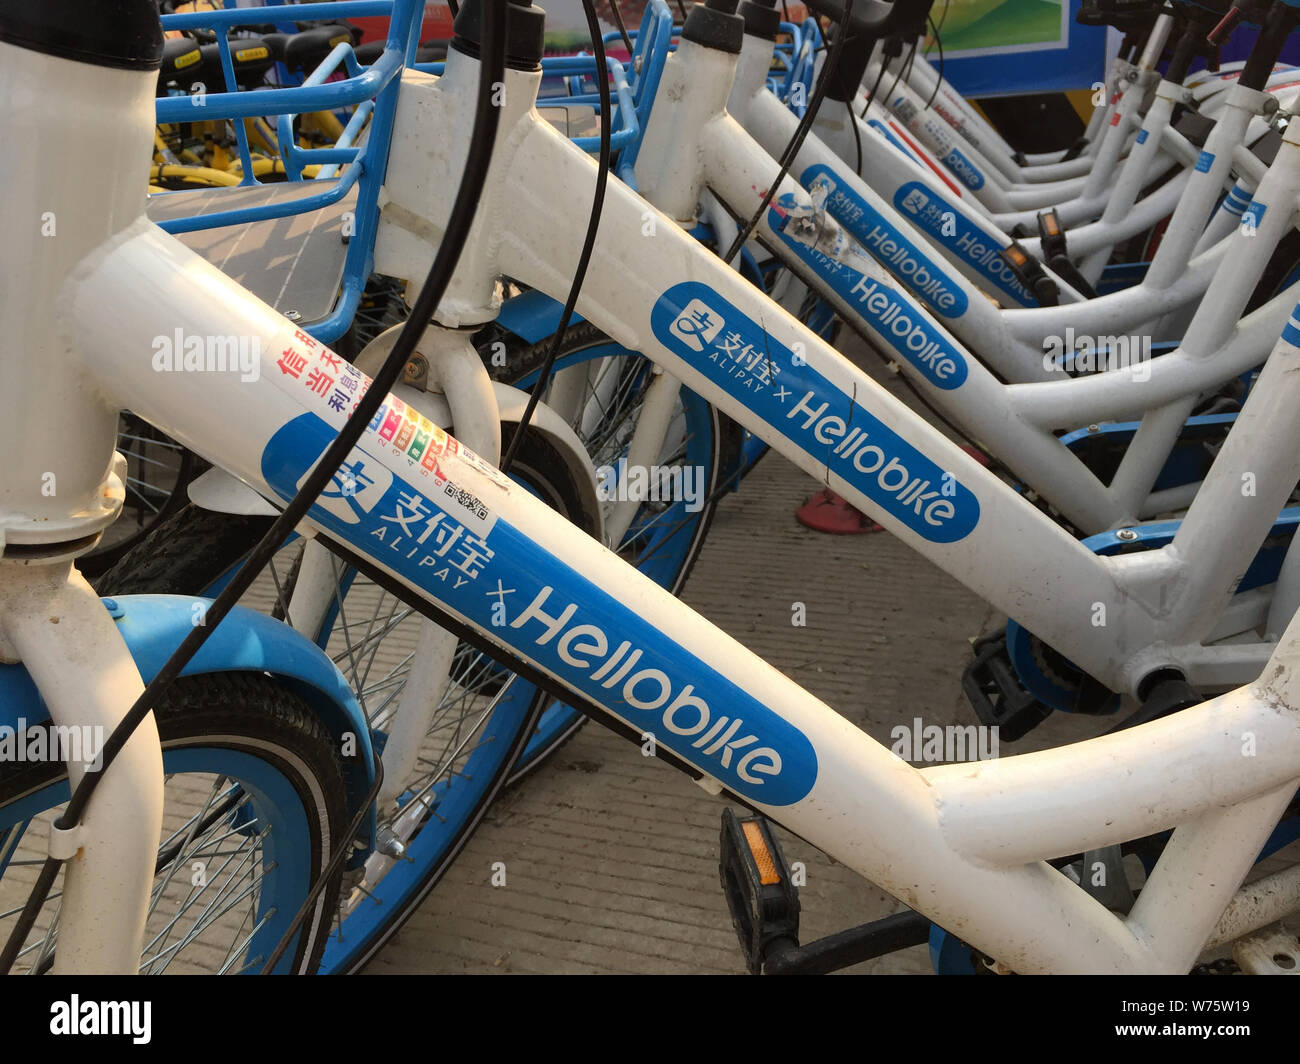 --Archivo-bicicletas de servicios de intercambio de bicicletas chinas Hellobike están alineadas en una calle en la ciudad de Wuhan, provincia de Hubei en China central, 27 de octubre de 2017. Foto de stock